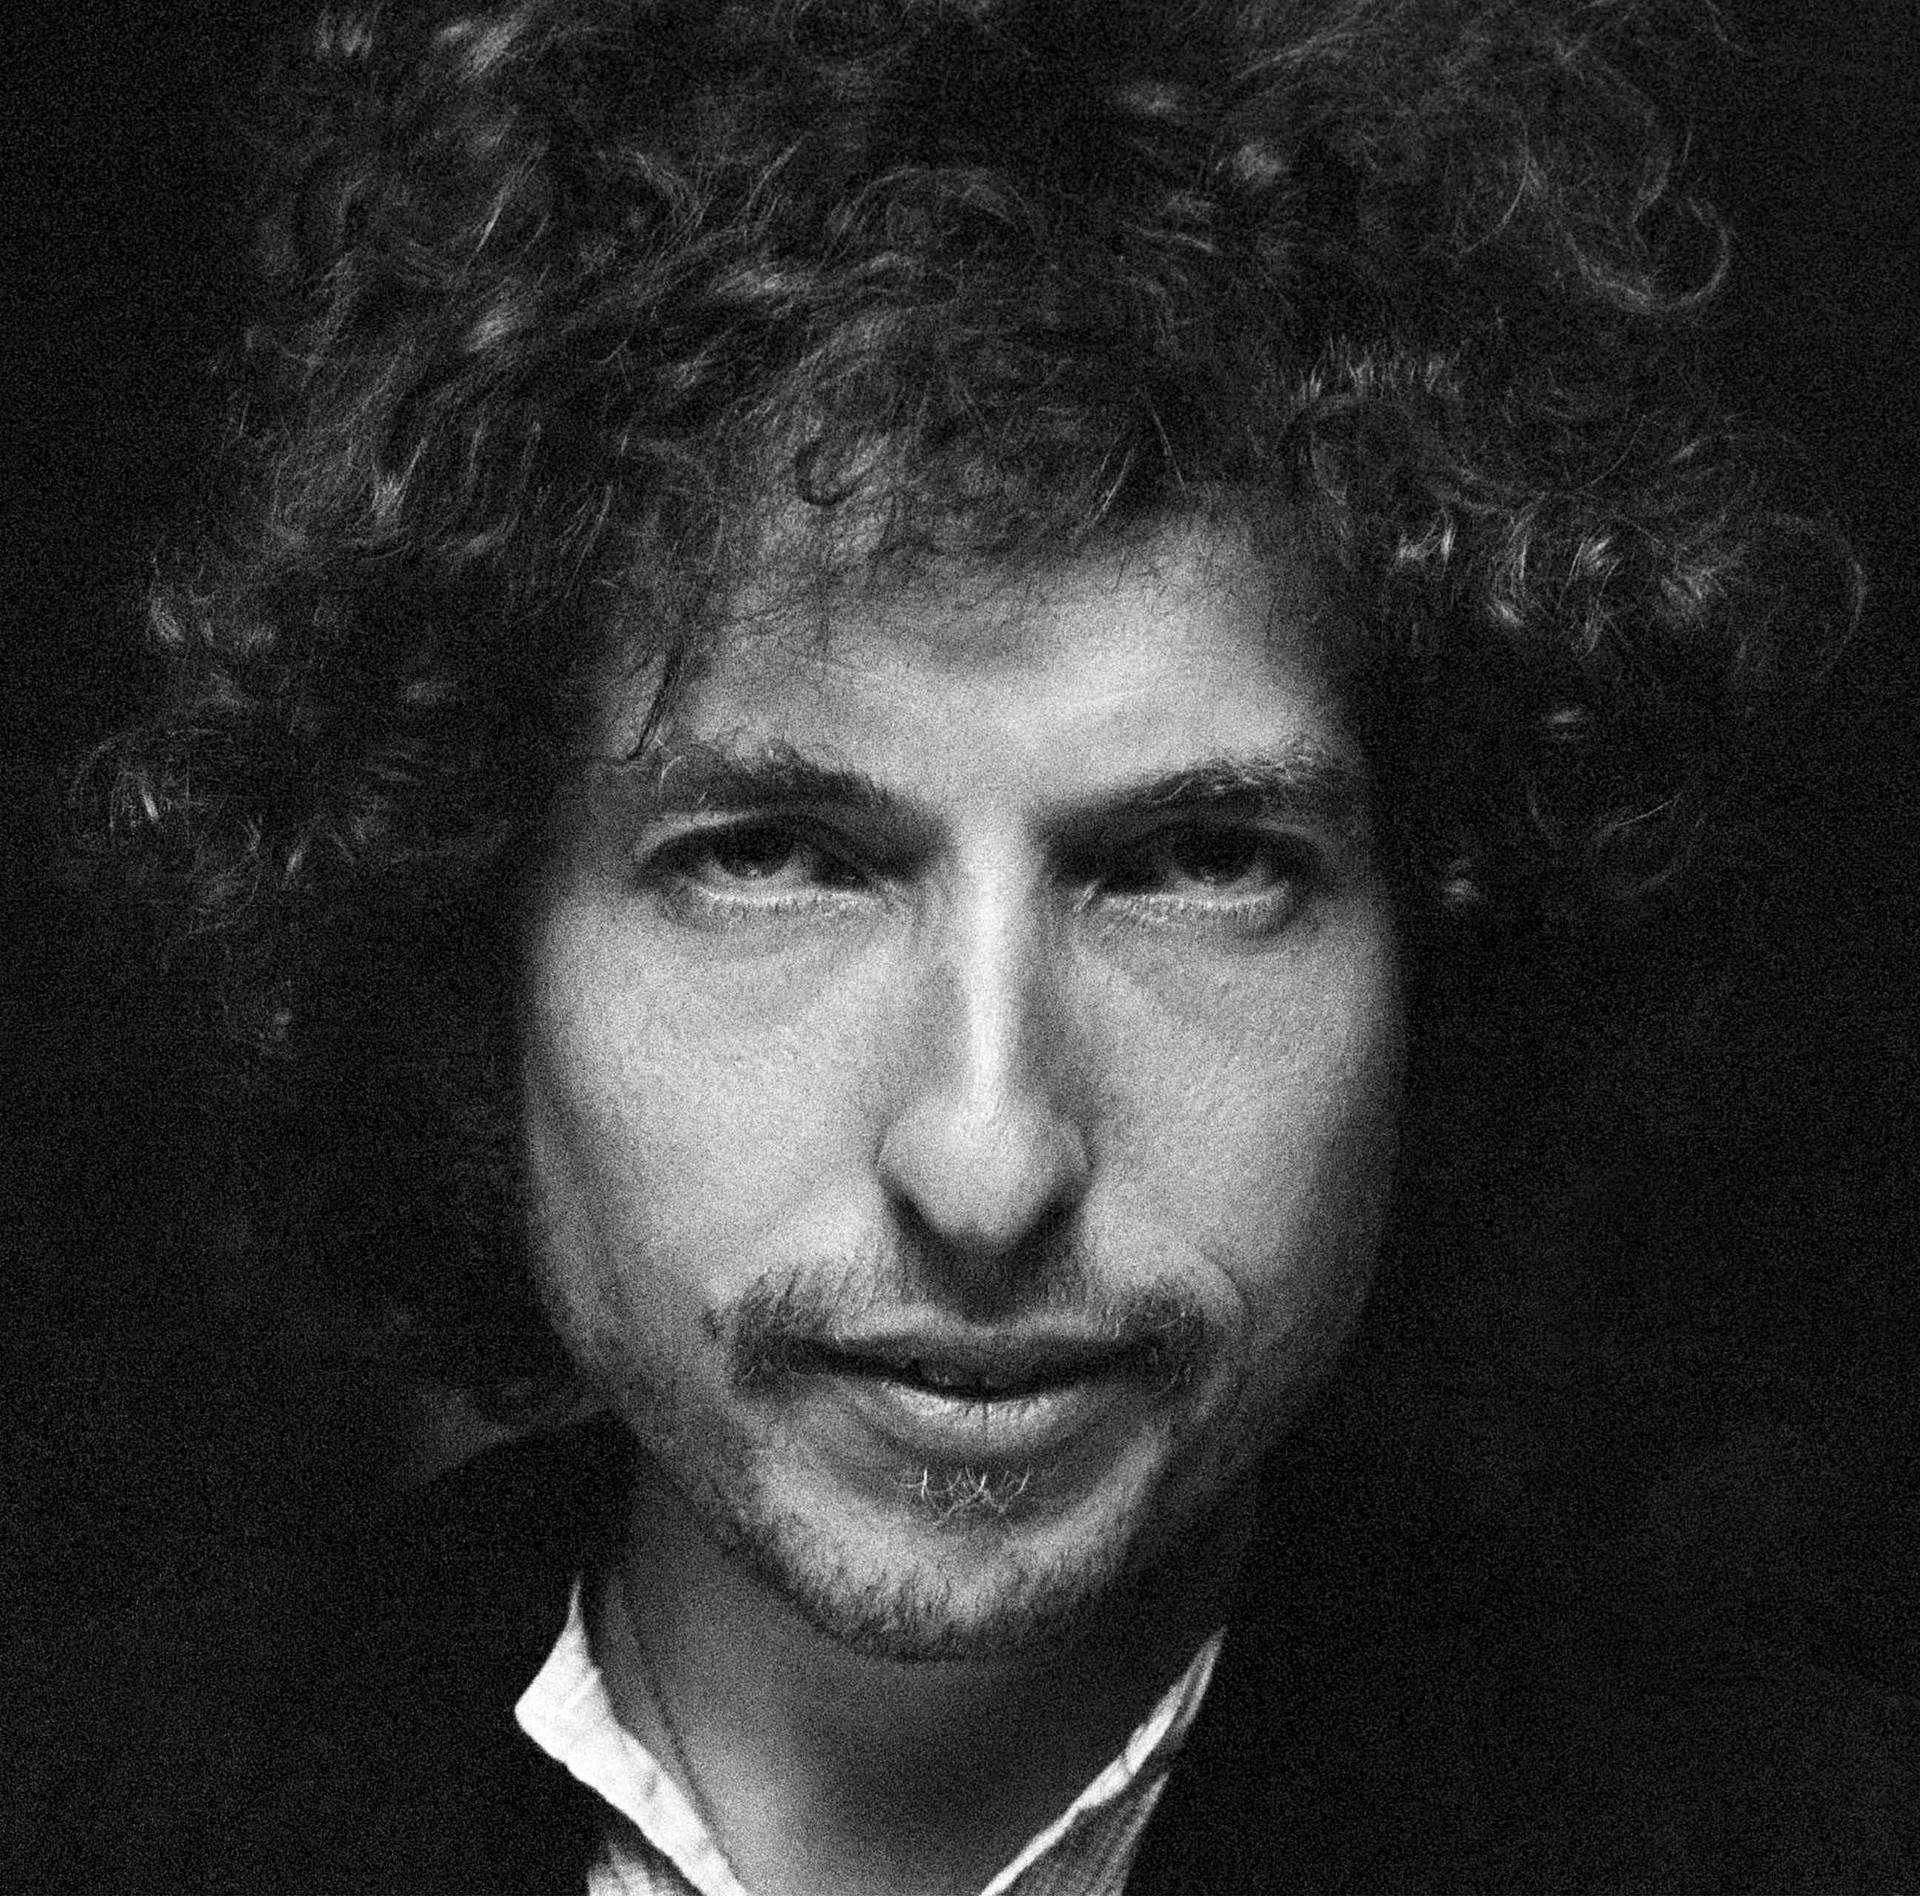 Bob Dylan 2592 X 2560 Wallpaper